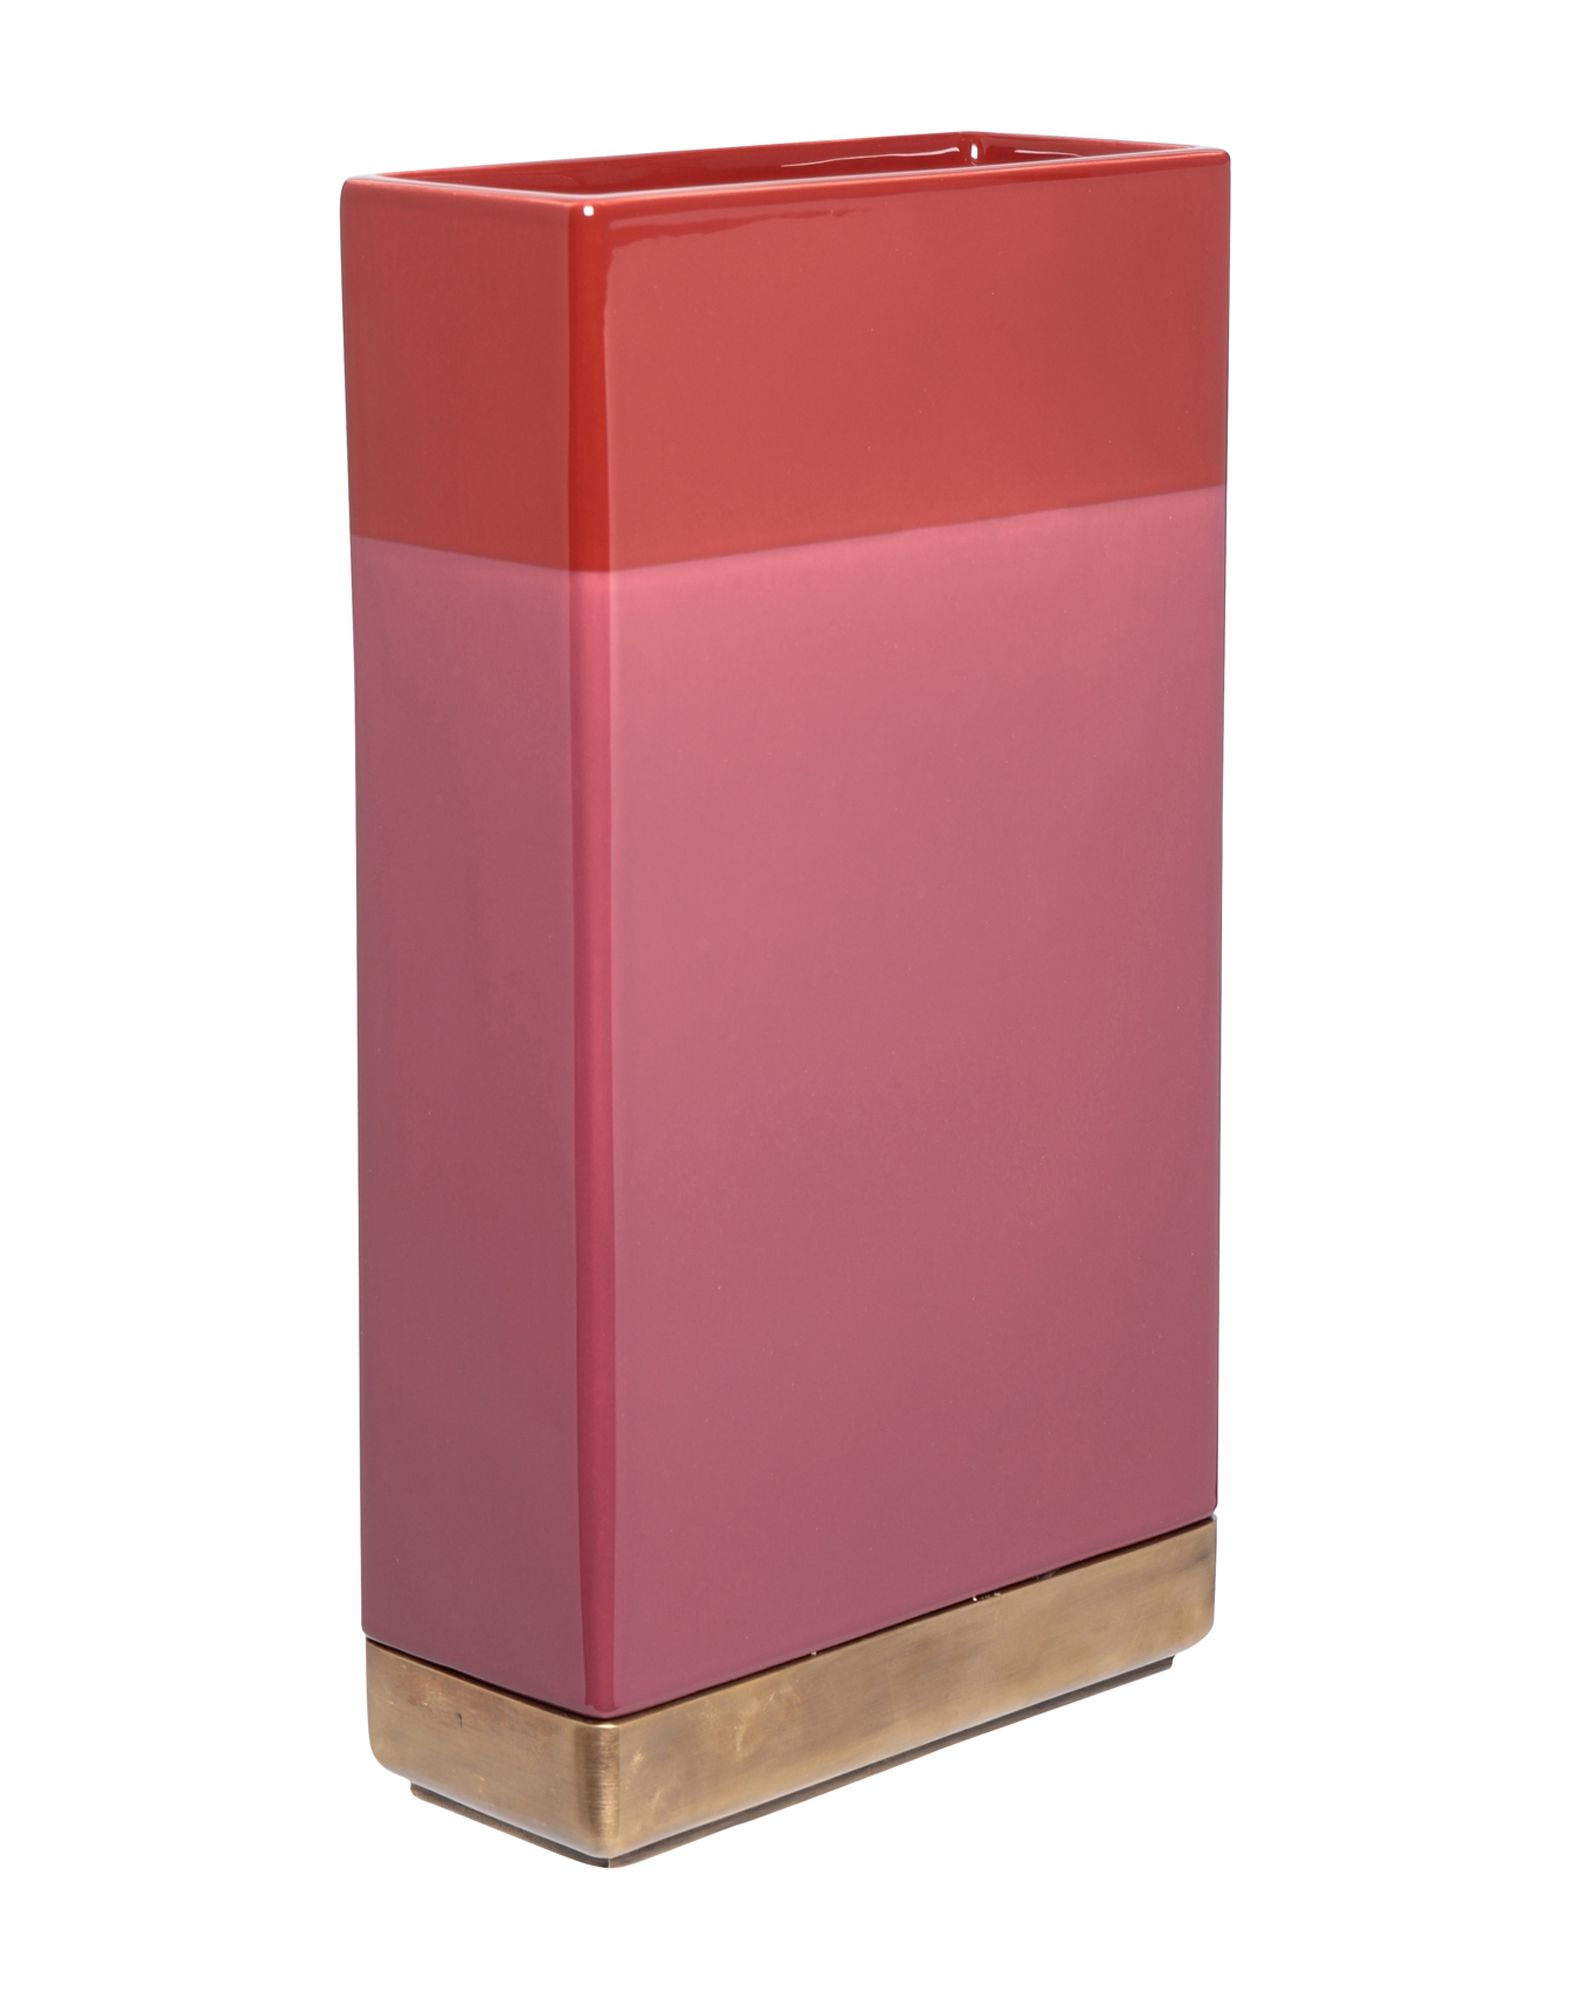 《送料無料》BITOSSI CERAMICHE Unisex ベース ピンク 陶製 100% Vaso Rosa